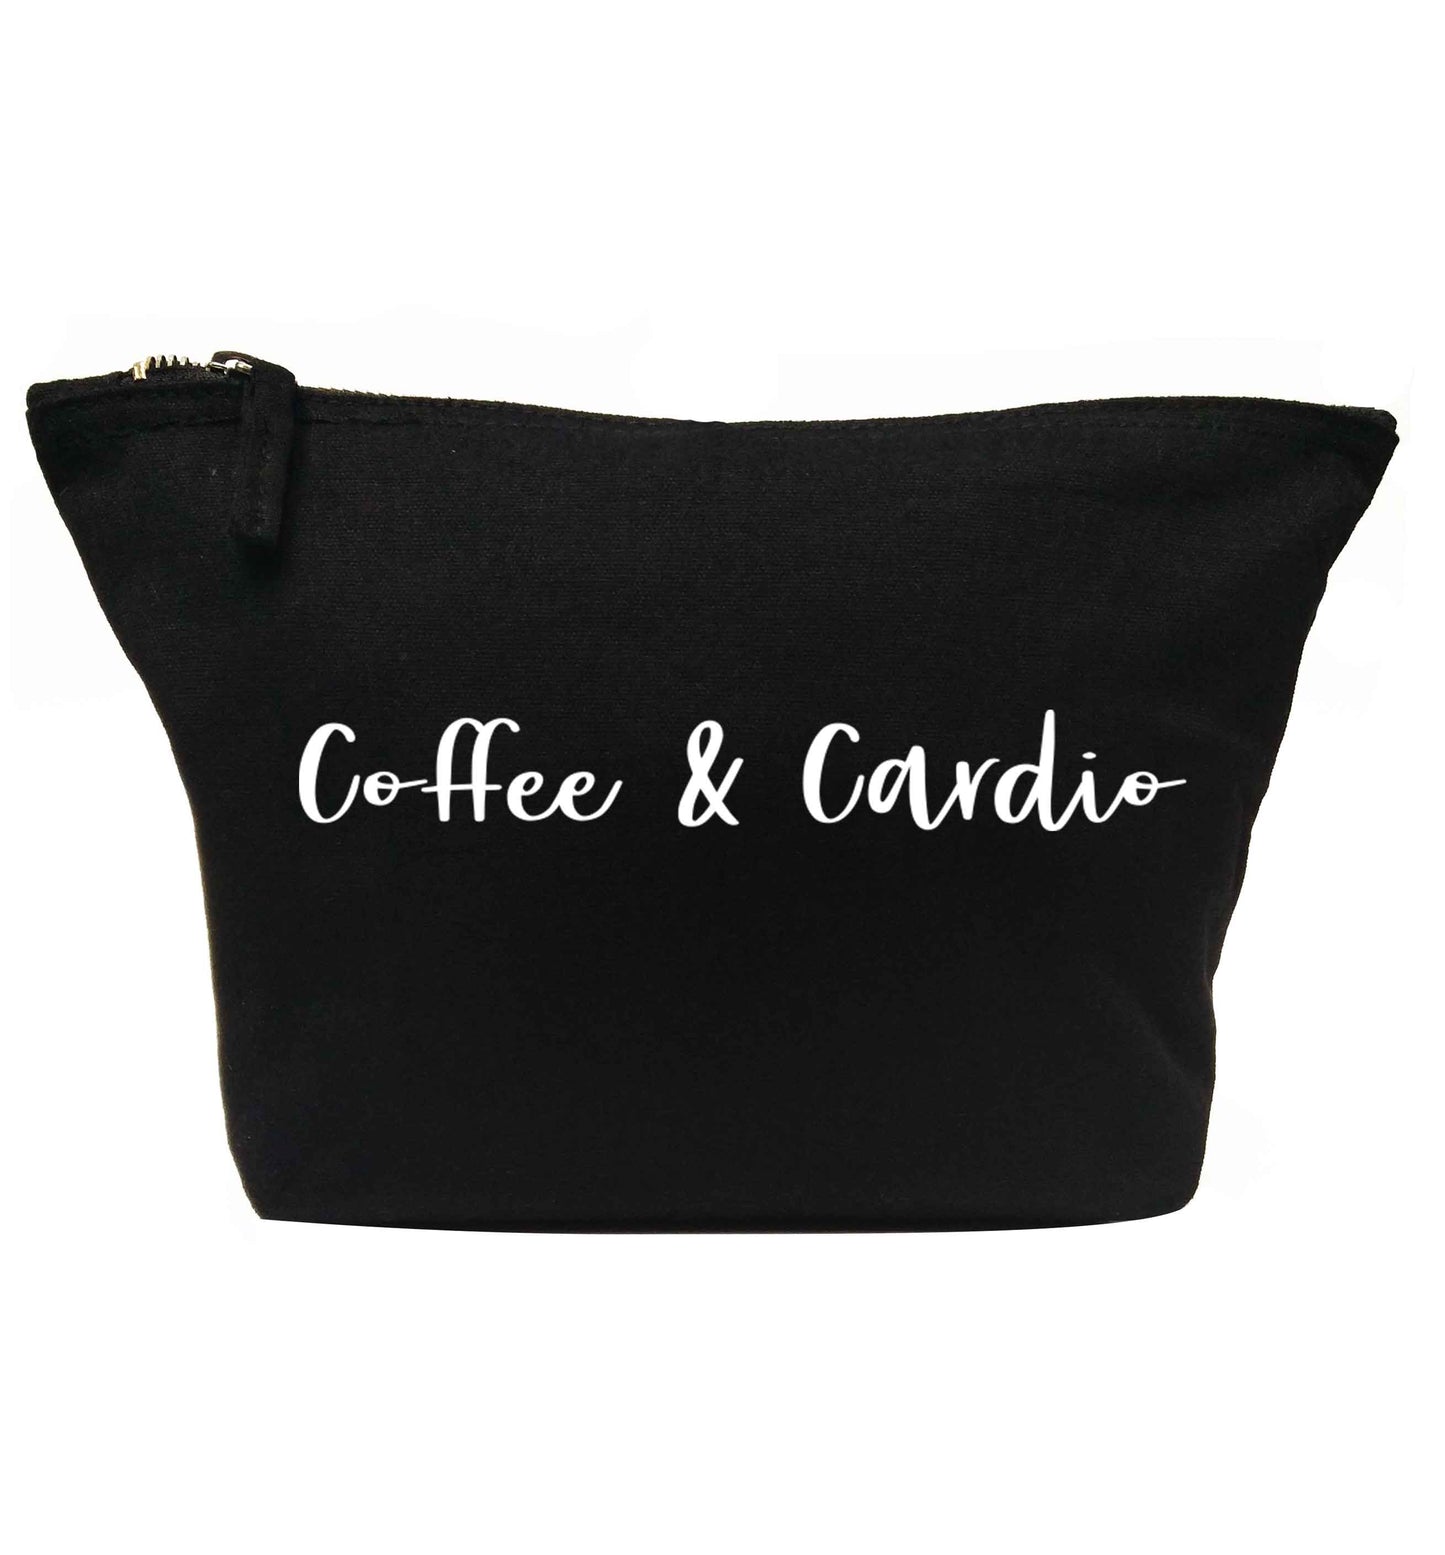 Coffee and cardio | makeup / wash bag